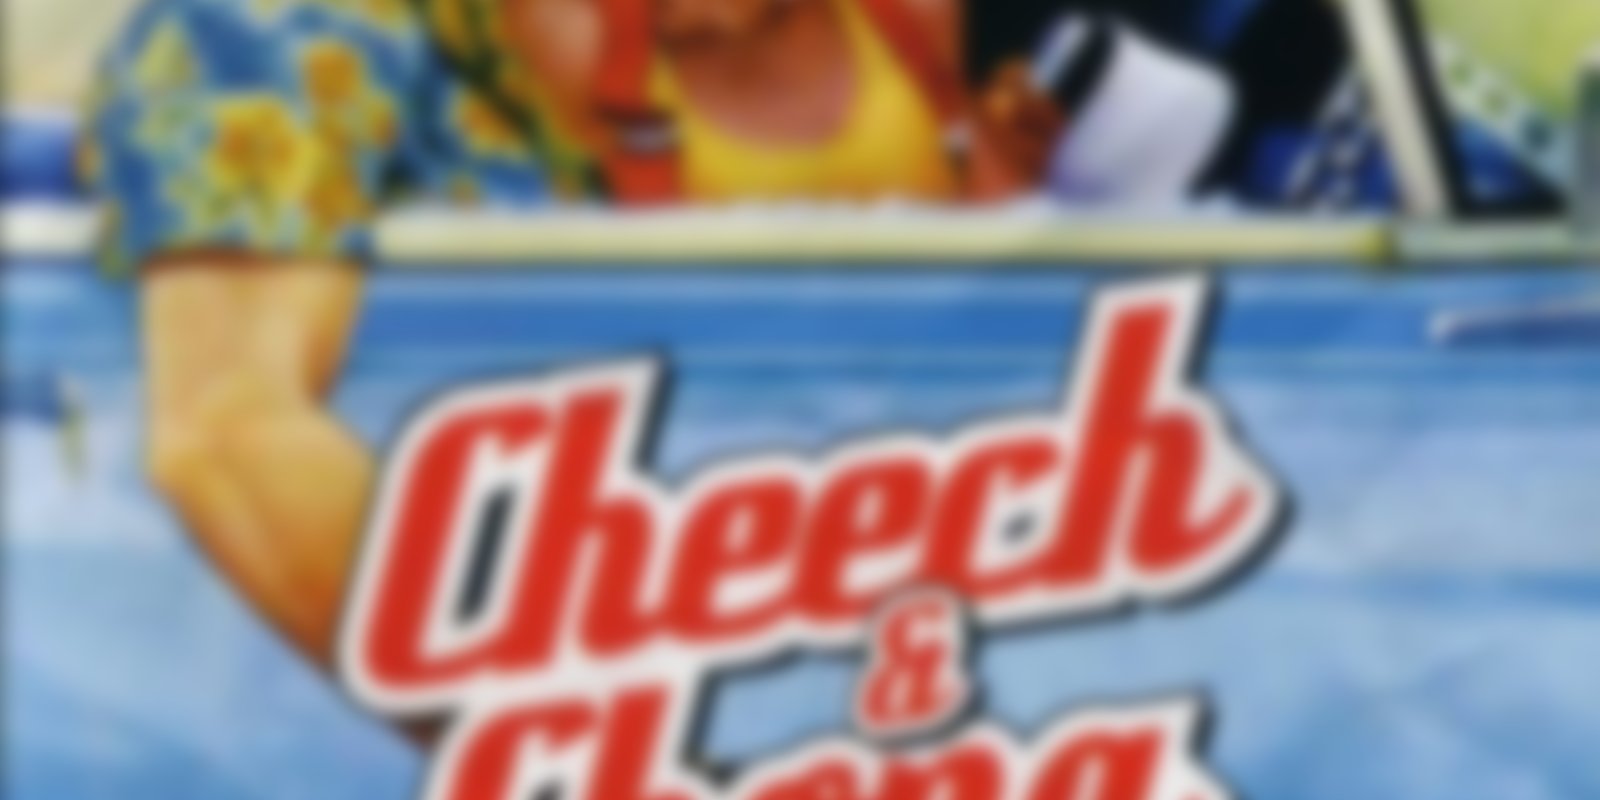 Cheech & Chong - Jetzt hats sich ausgeraucht!